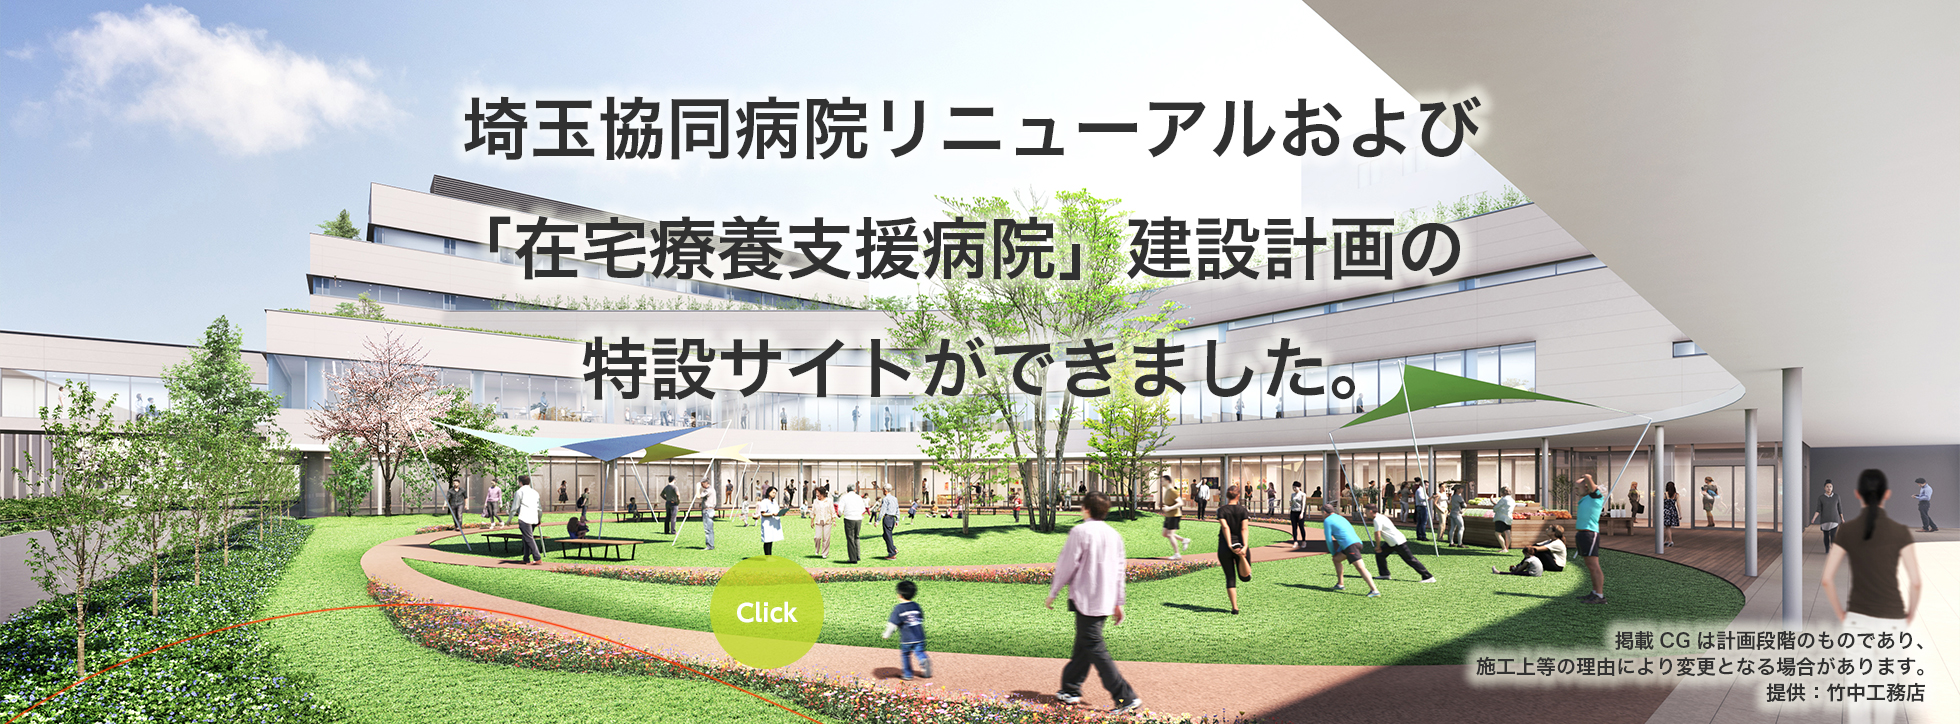 埼玉協同病院リニューアルおよび「在宅療養支援病院」建設計画の特設サイトができました。